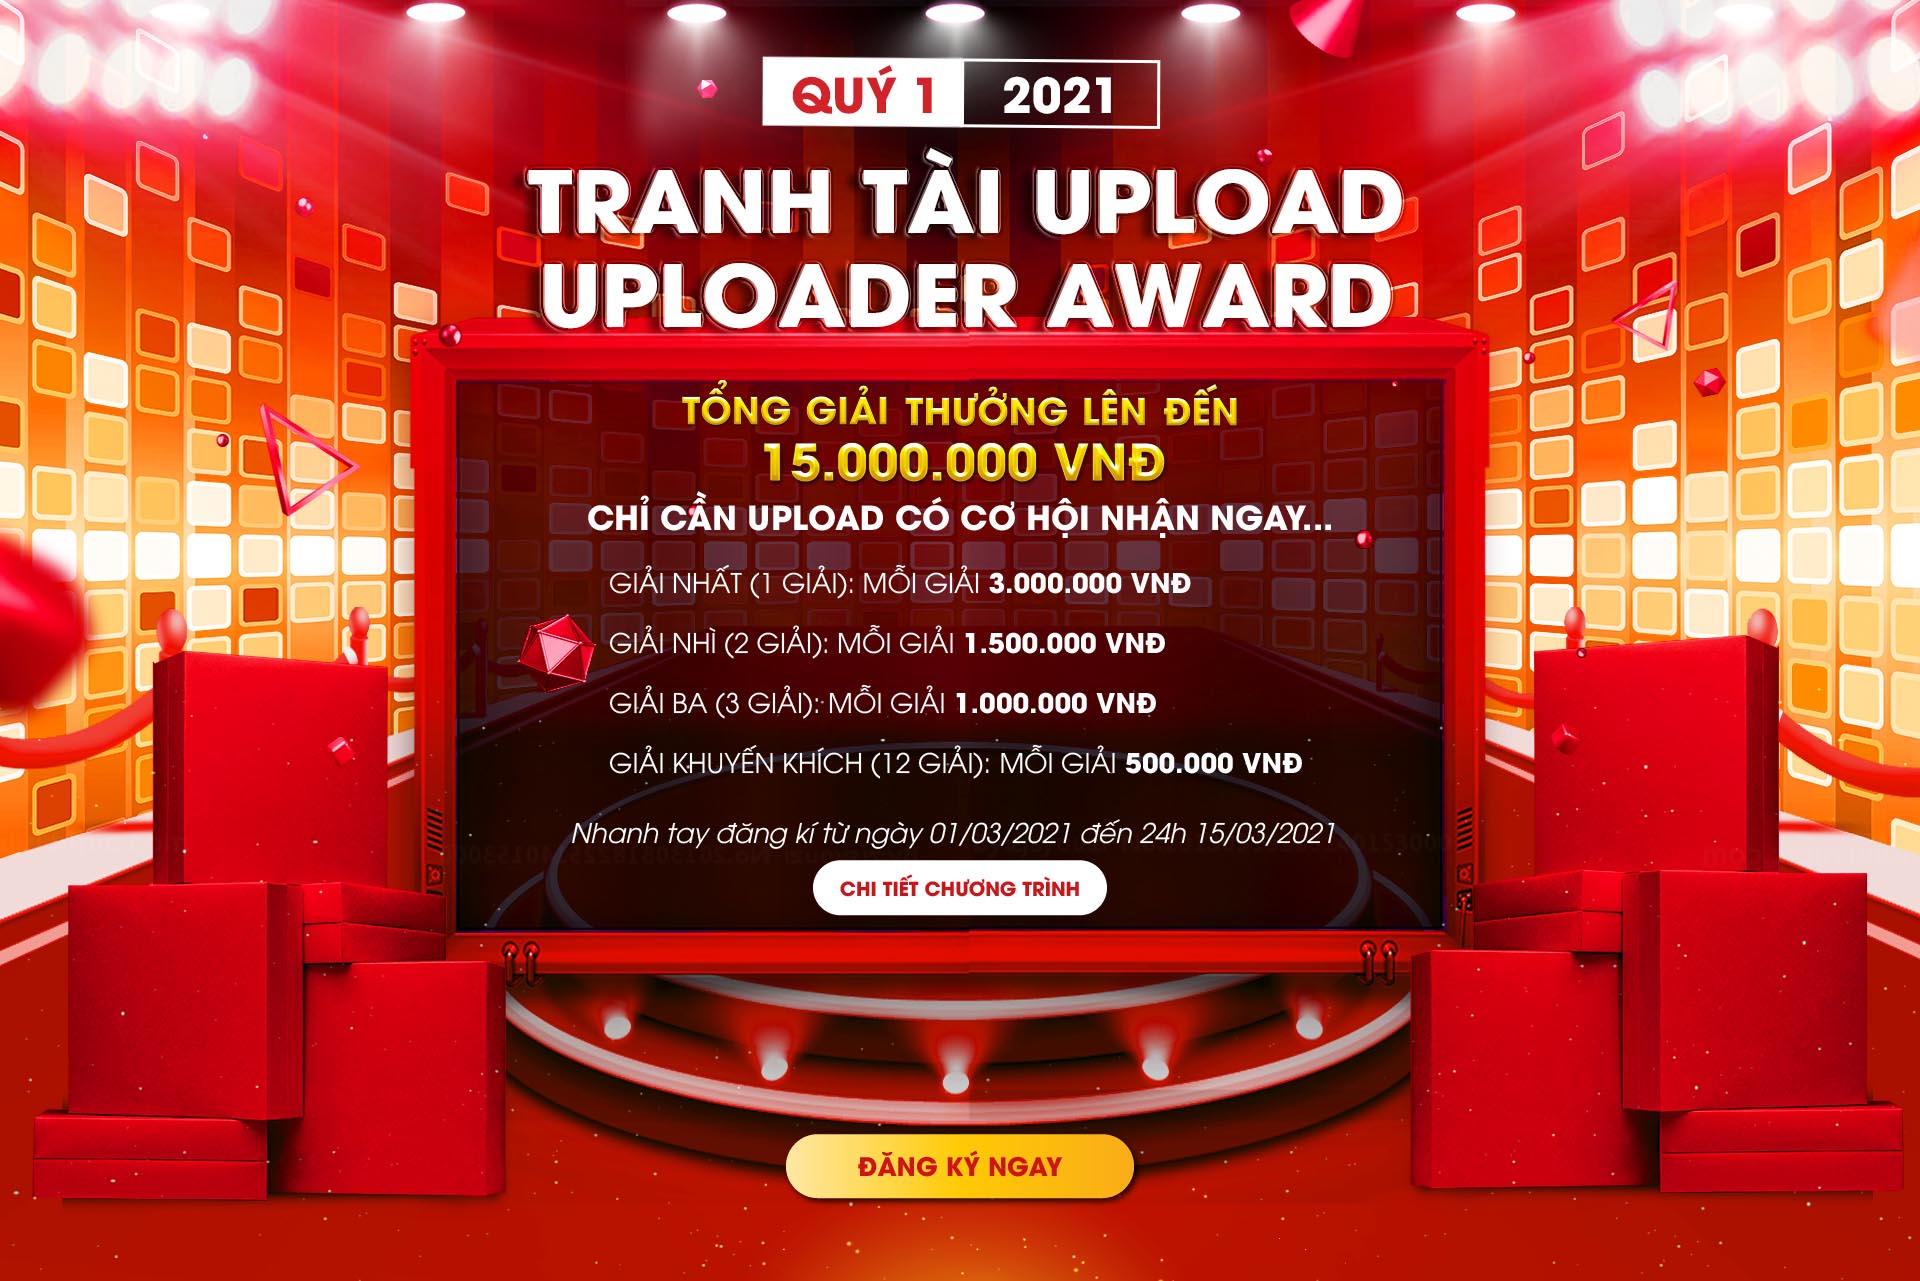 Cuộc thi UPLOAD QUÝ 1 – Cao thủ uploader tranh tài giải thưởng 15,000,000 VNĐ